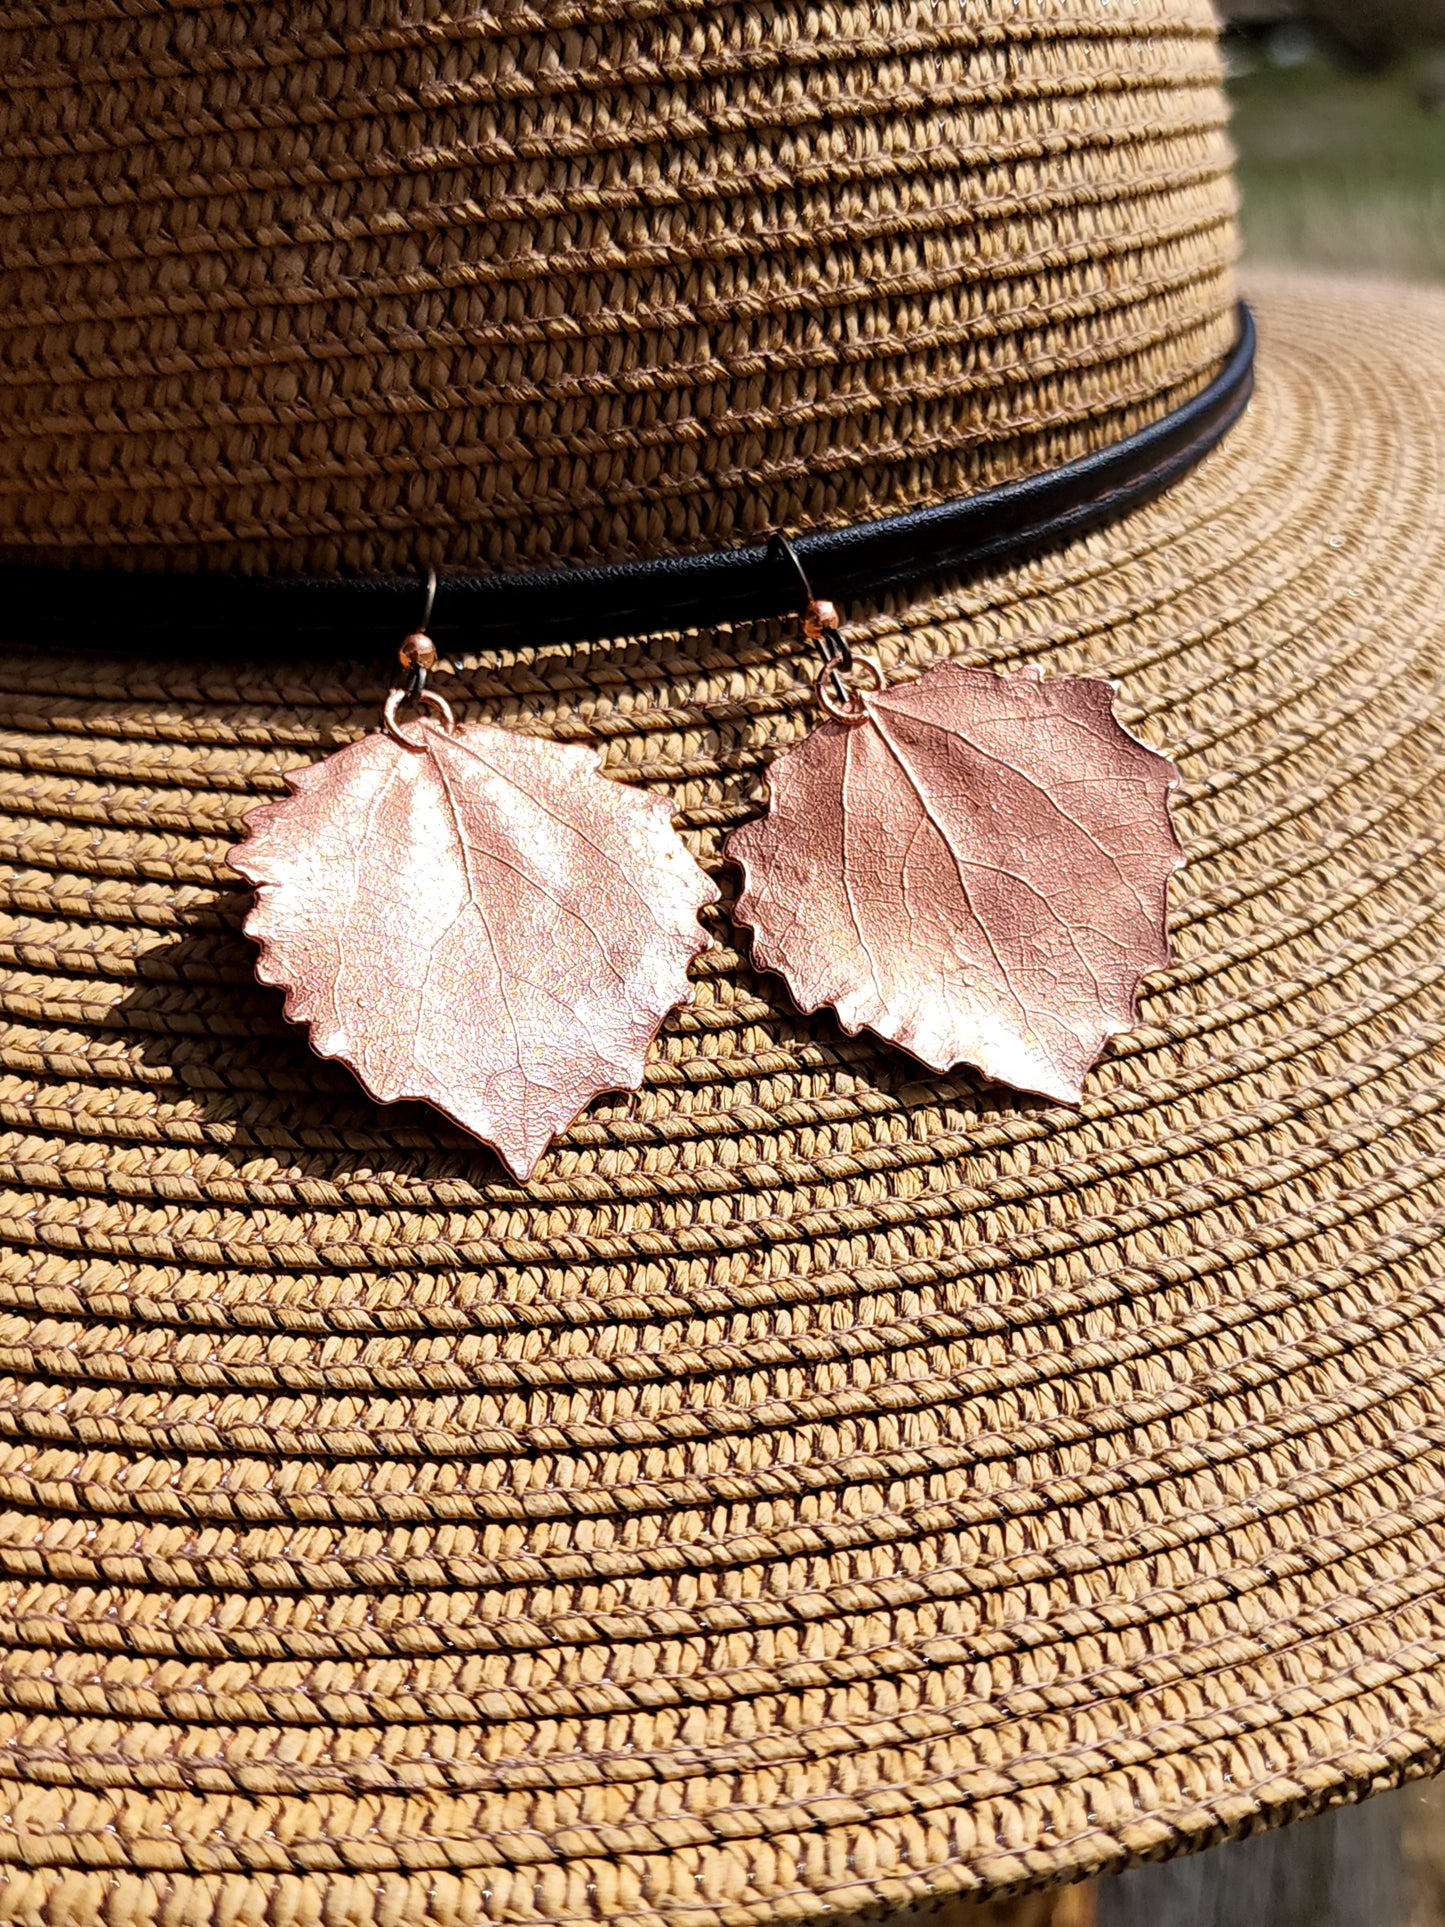 Aspen Leaf Earrings